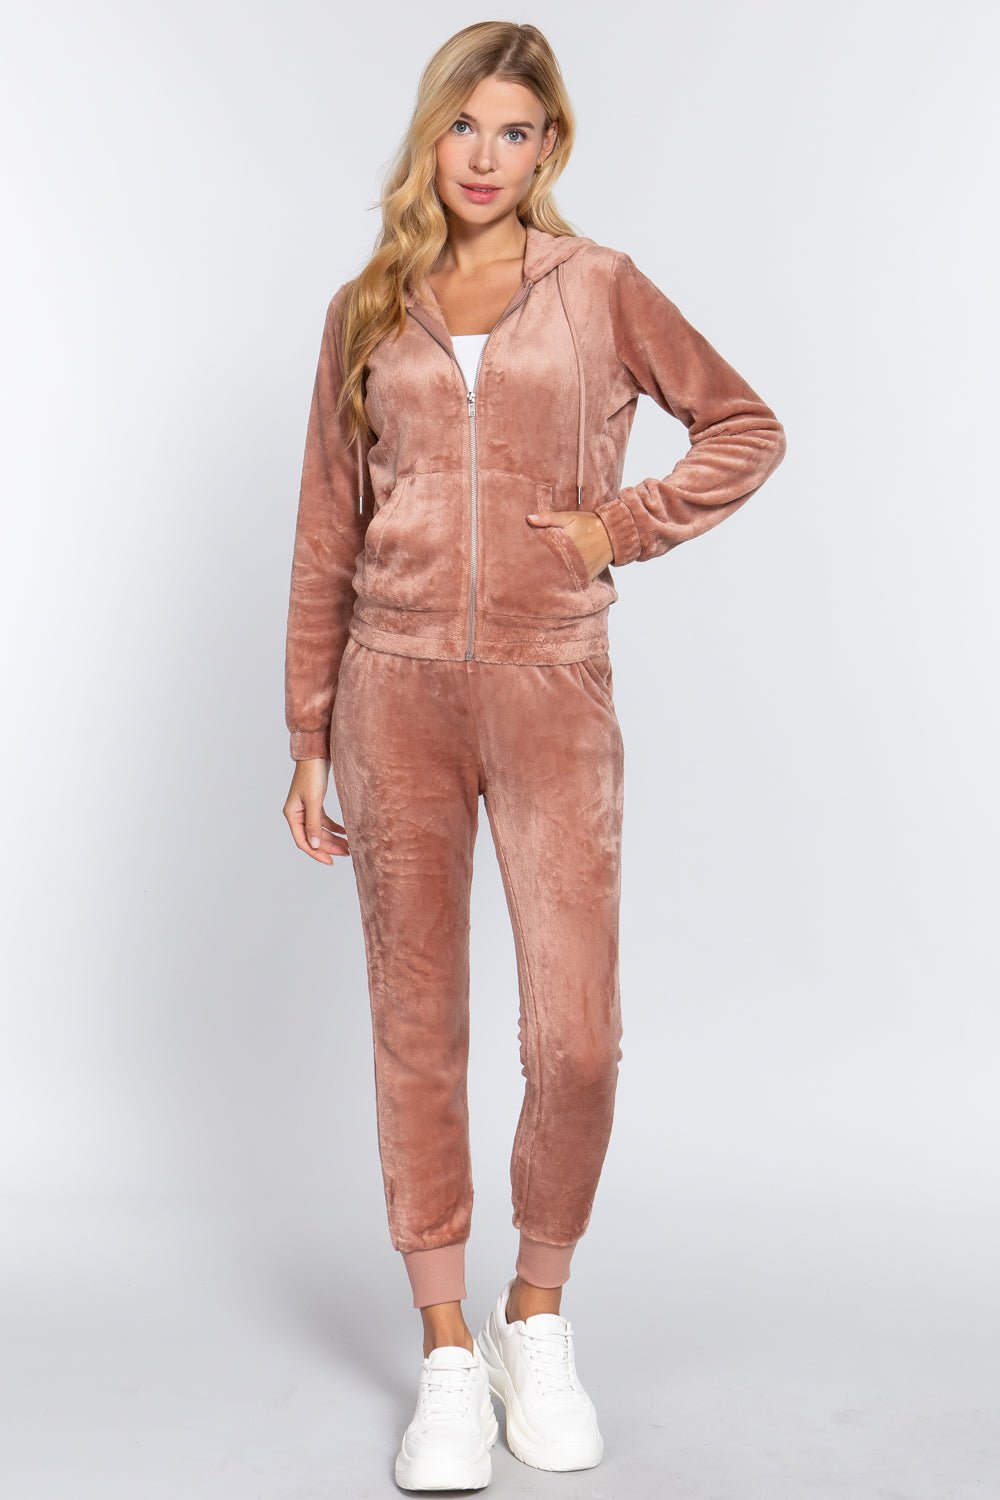 Sand Pink Faux Fur Jacket & Jogger Pants Outfit Set - 9 colors - women's jogging set at TFC&H Co.